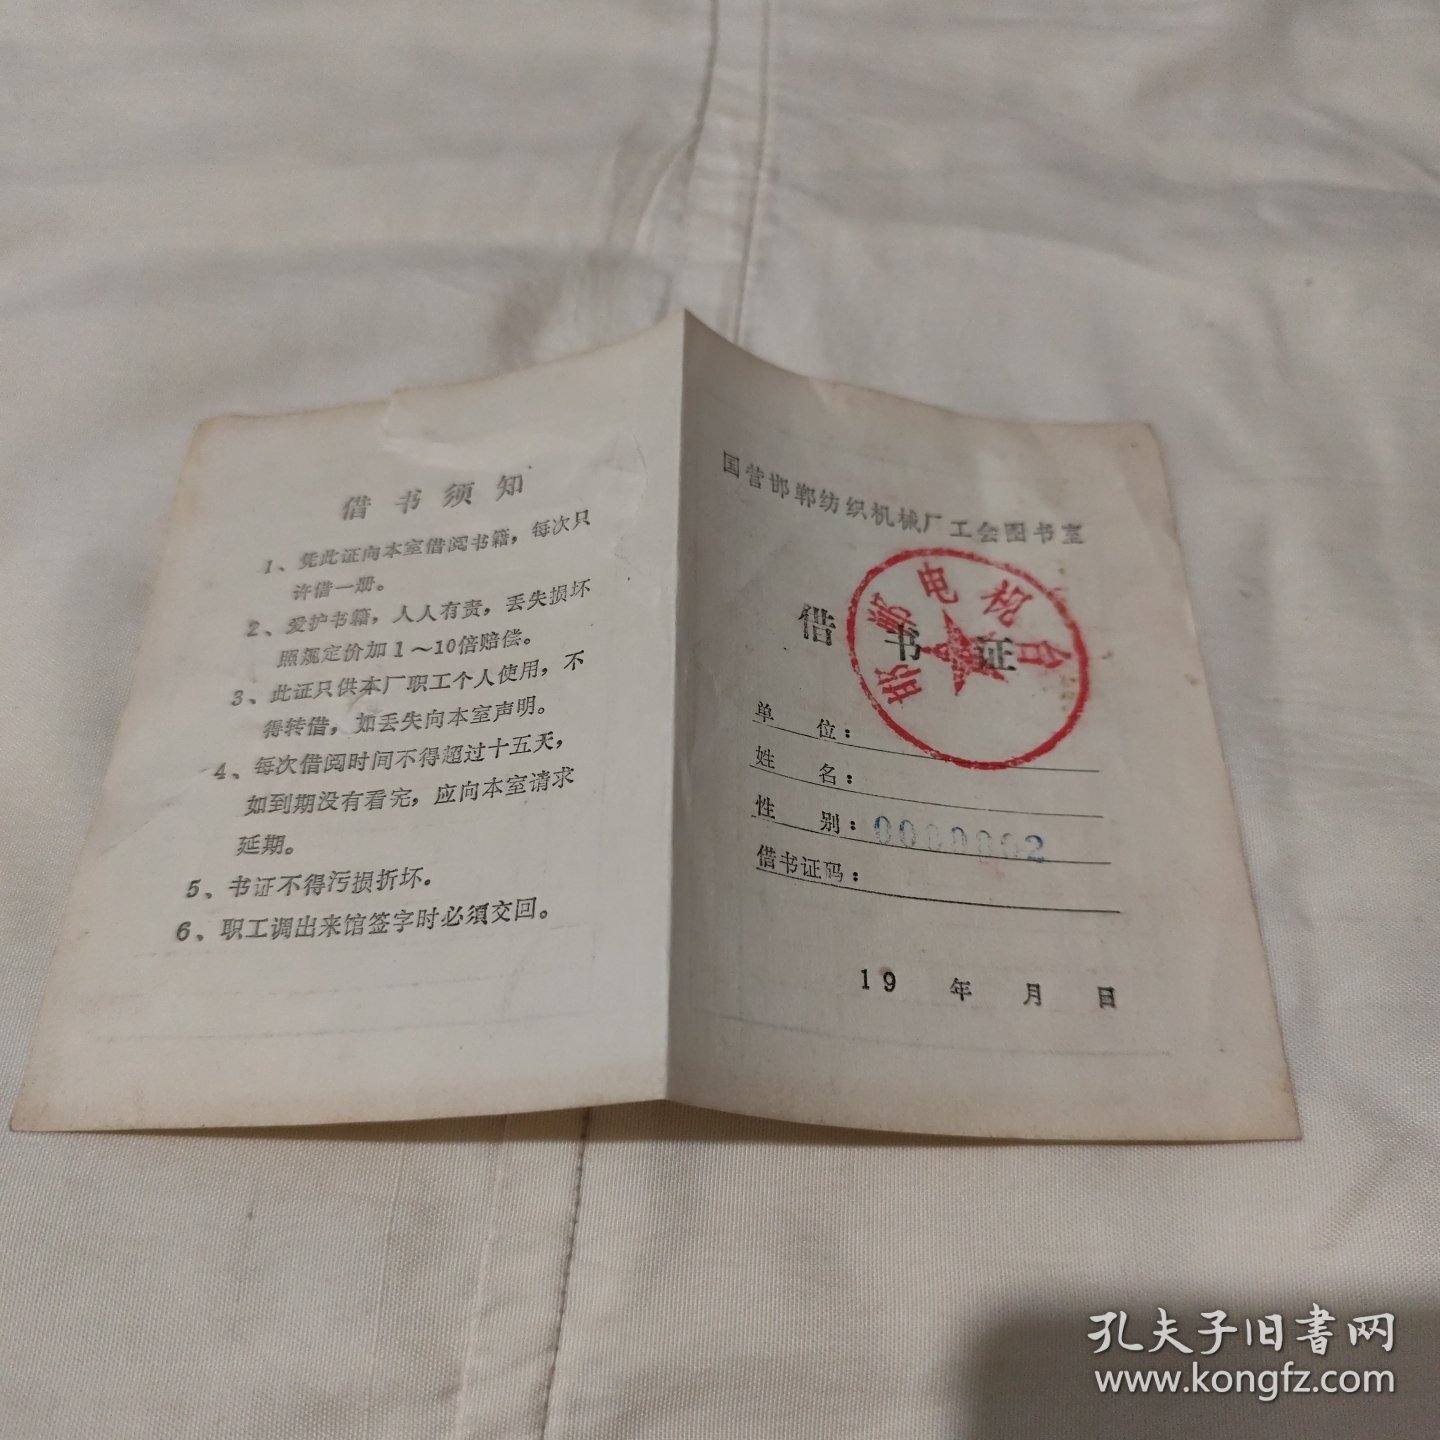 国营邯郸纺织机械厂工会图书室借书证（空白）